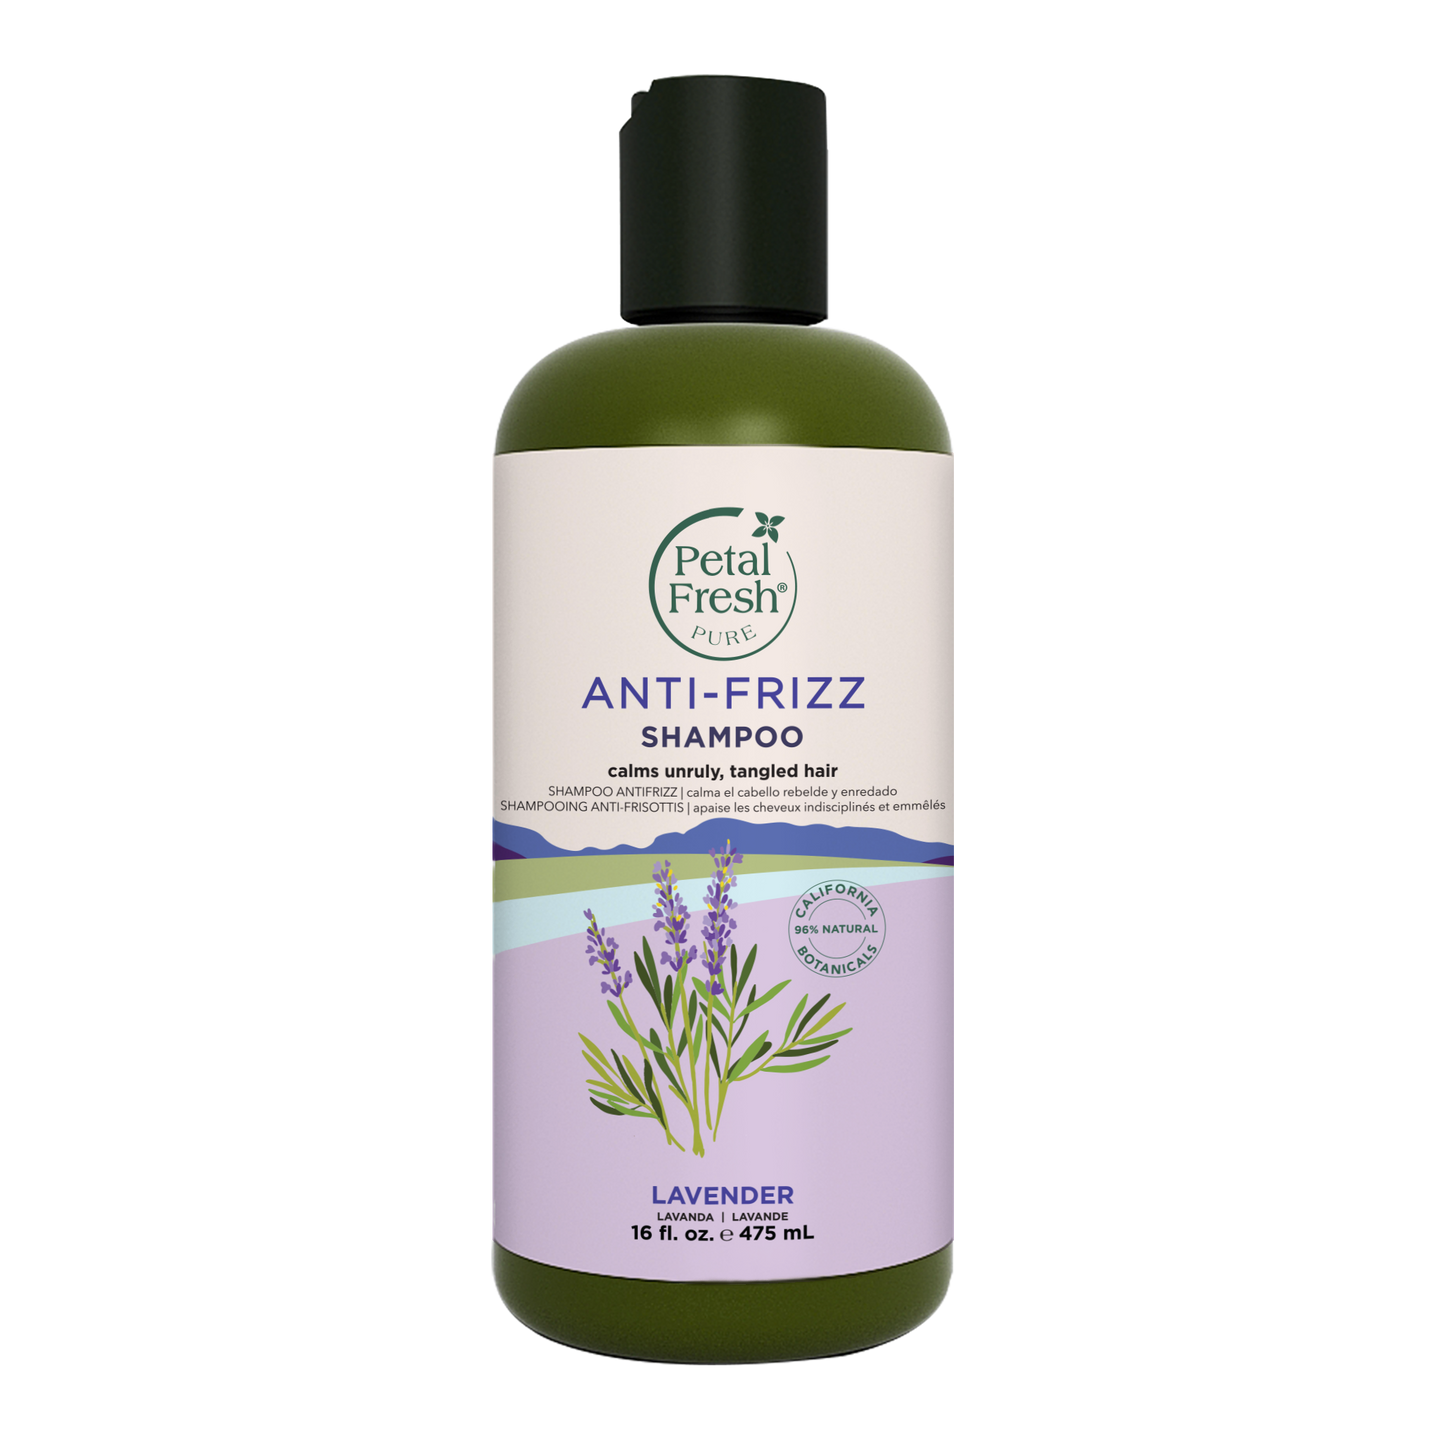 Anti-Frizz Shampoo with Lavender